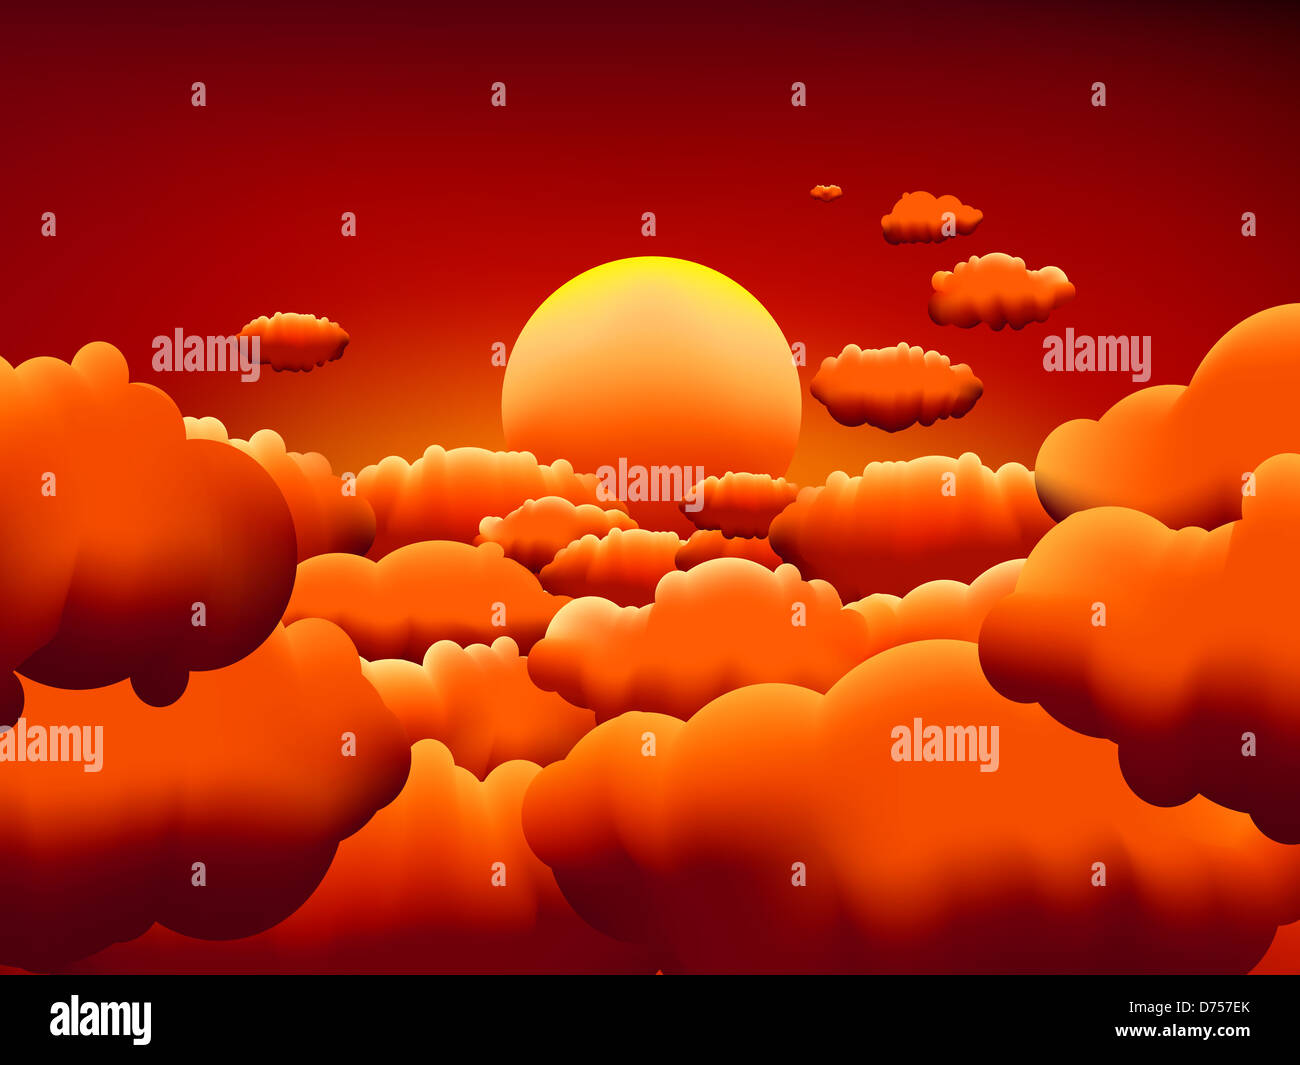 Goldener Sonnenuntergang Wolken Hintergrund, ähnlich zu sehen besuchen Sie mein portfolio Stockfoto